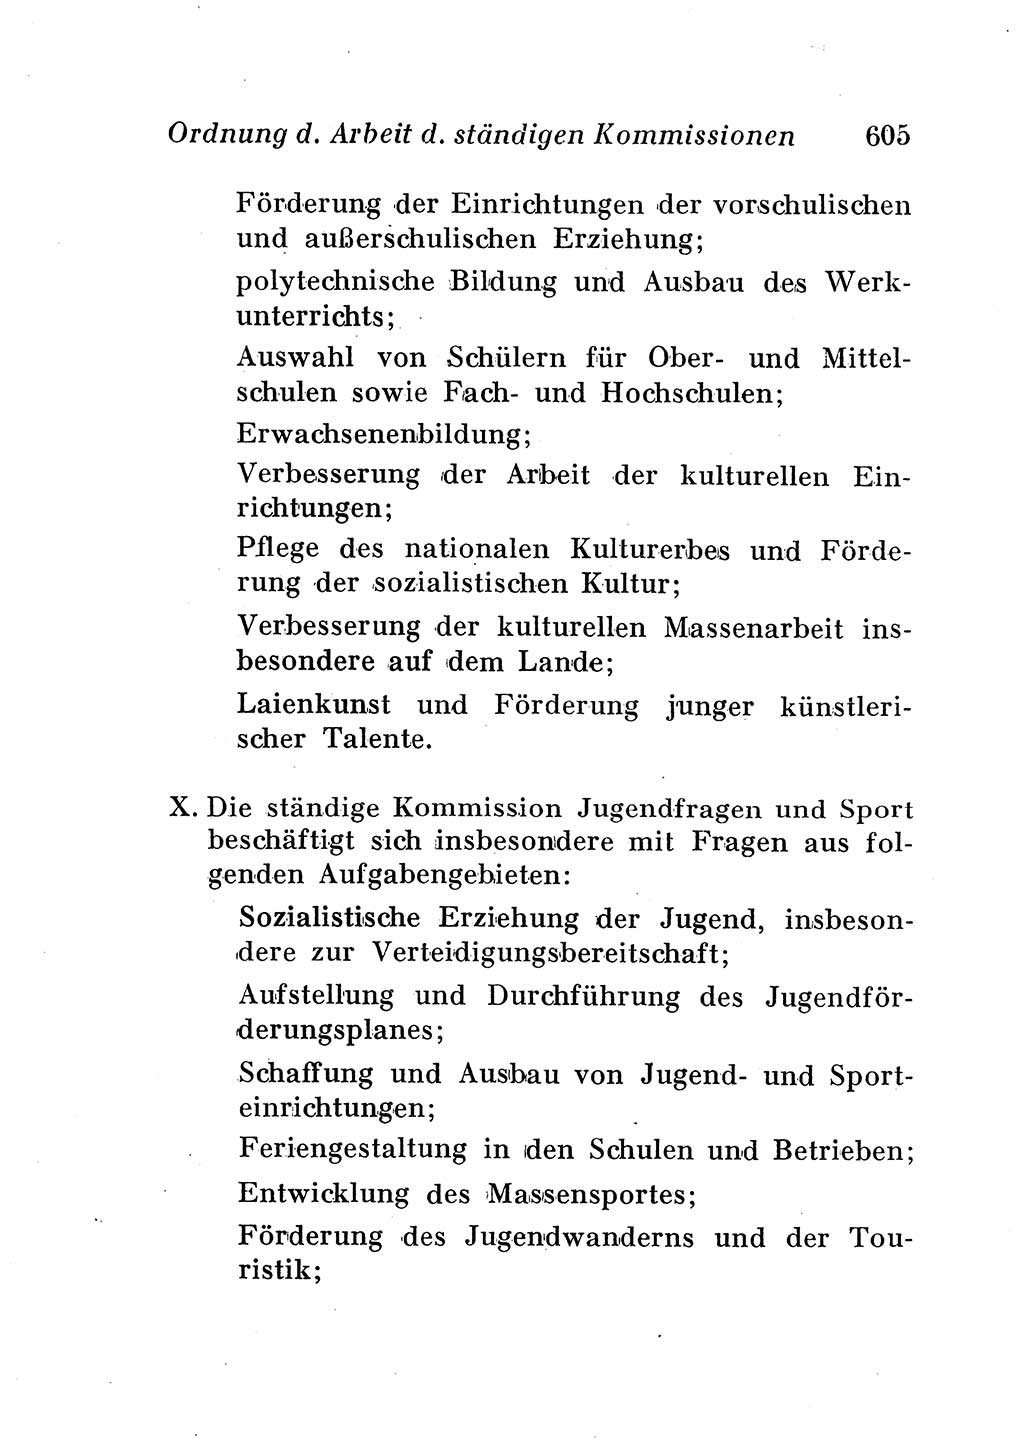 Staats- und verwaltungsrechtliche Gesetze der Deutschen Demokratischen Republik (DDR) 1958, Seite 605 (StVerwR Ges. DDR 1958, S. 605)